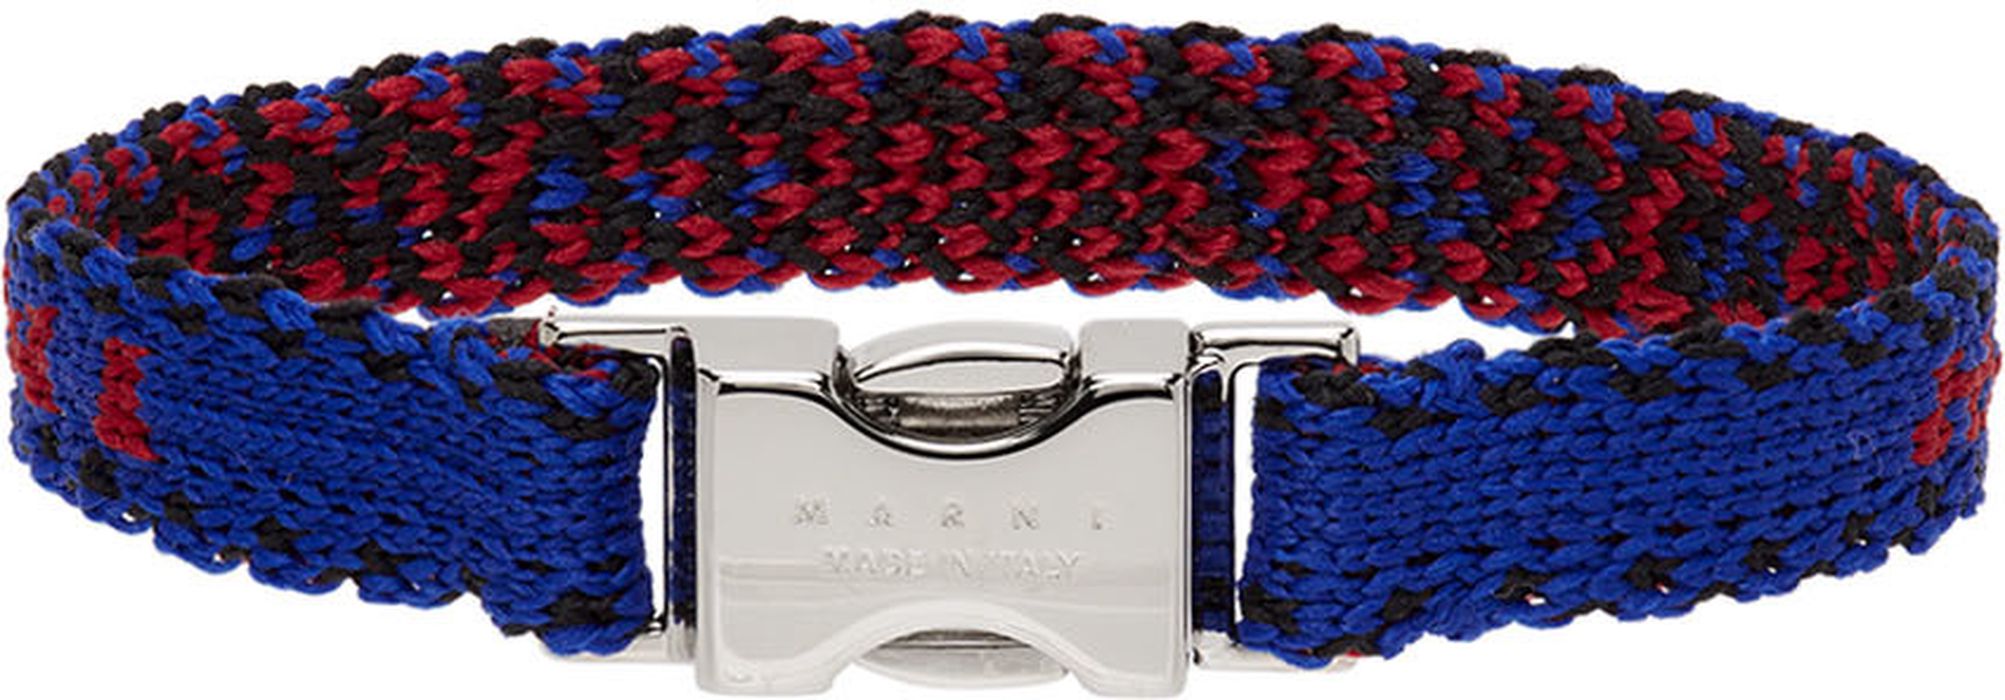 Marni Blue & Black Crochet Ribbon Bracelet